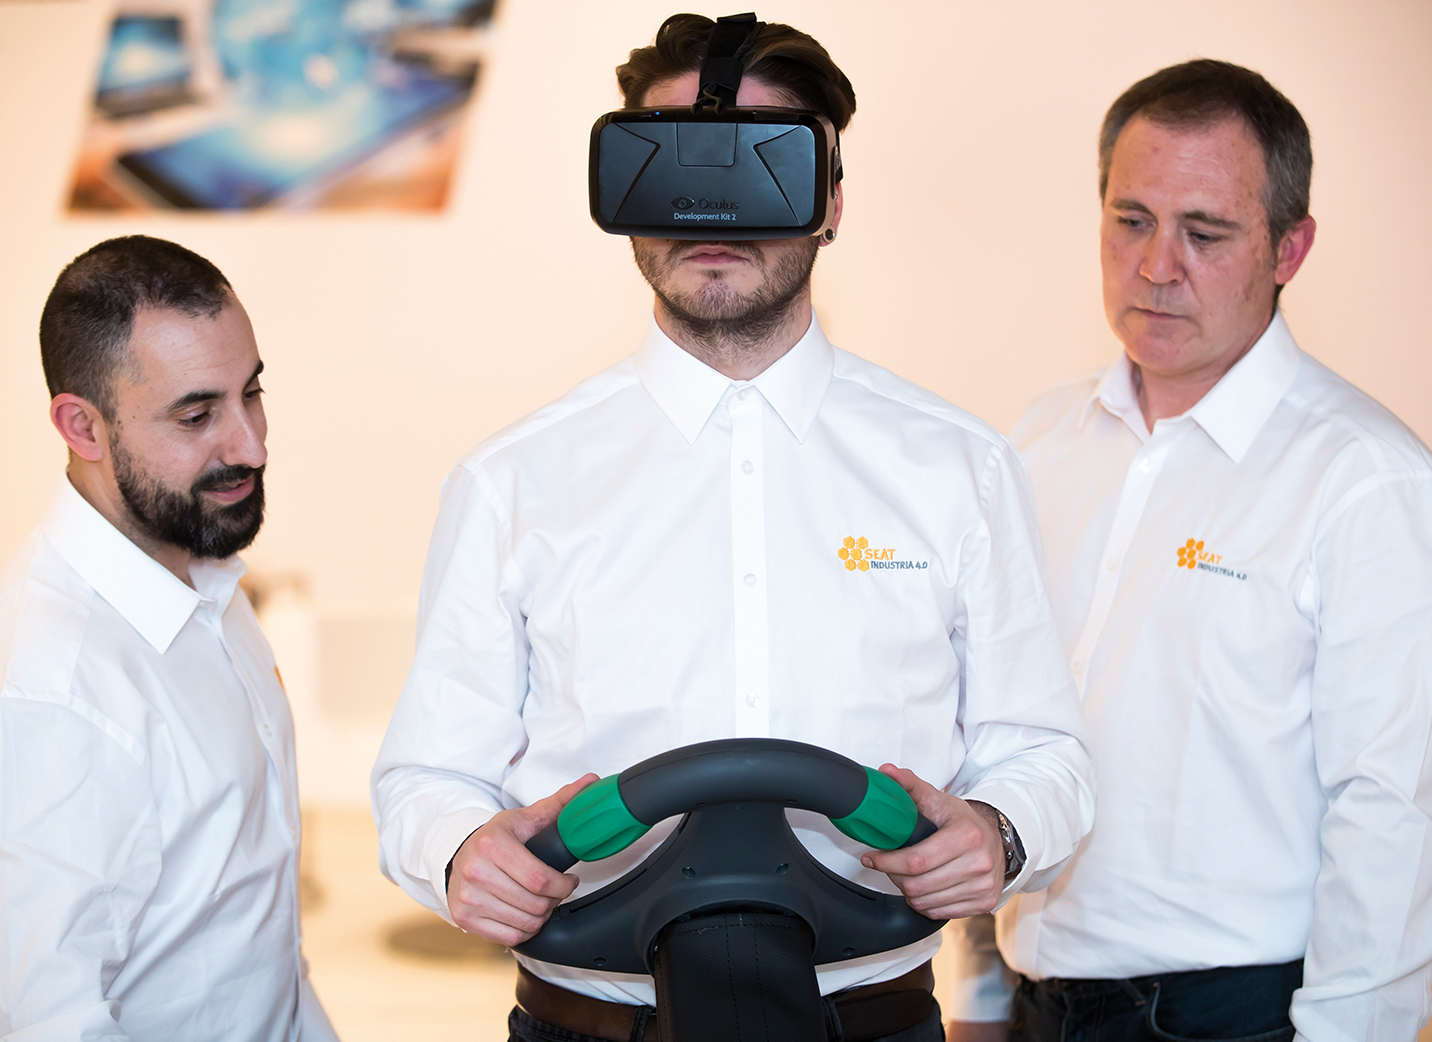 3 SEAT darbuotojai mokosi su virtualiomis ausinėmis ir automobilio vairu